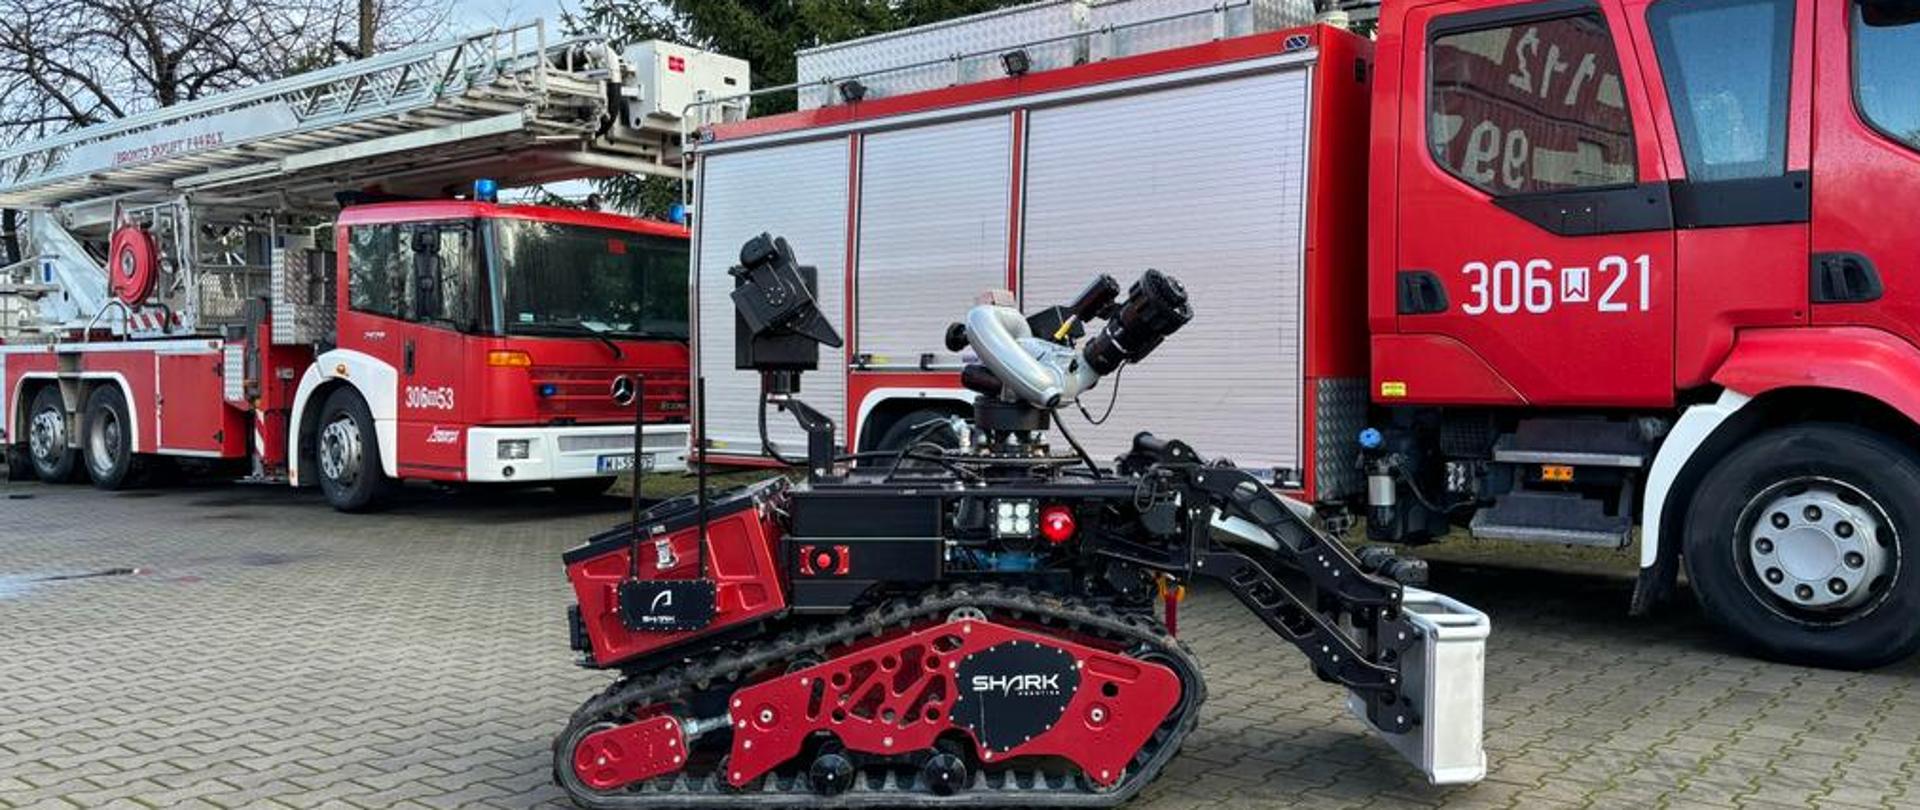 Robot gaśniczy Colossus na tle dwóch pojazdów pożarniczych: drabiny mechanicznej oraz średniego pojazdu gaśniczego